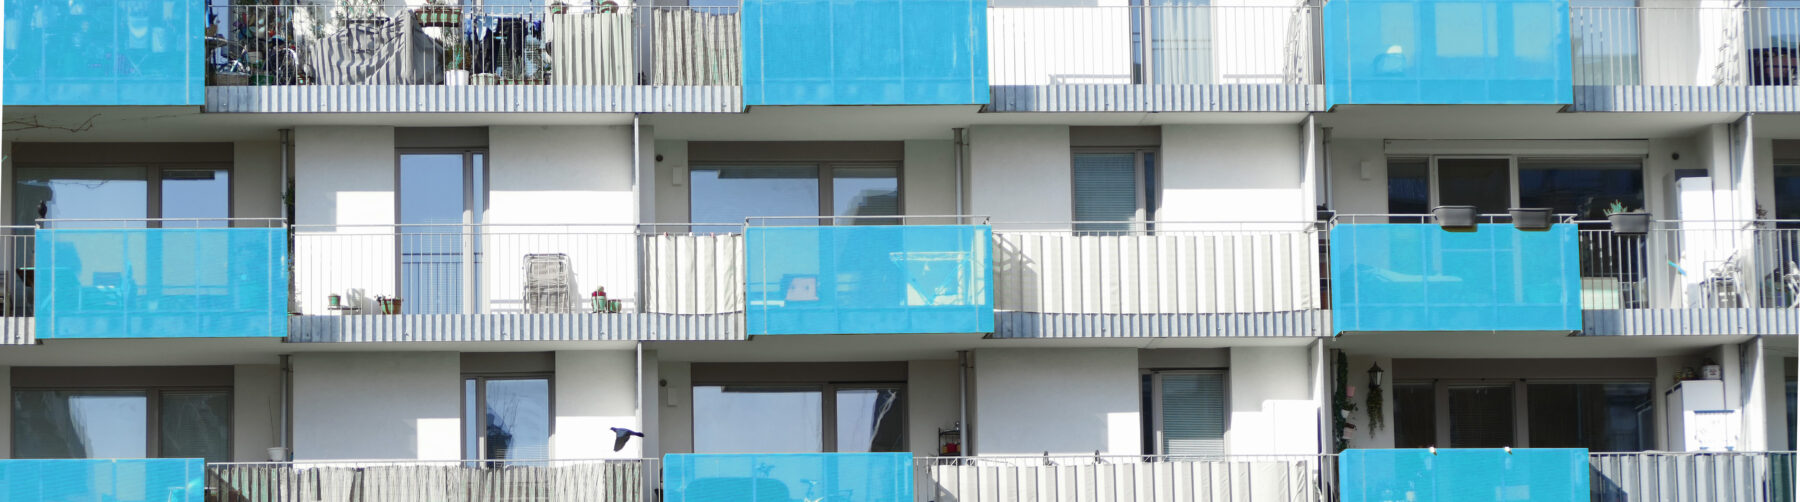 Weiße Häuserfassade mit blauen Balkonen